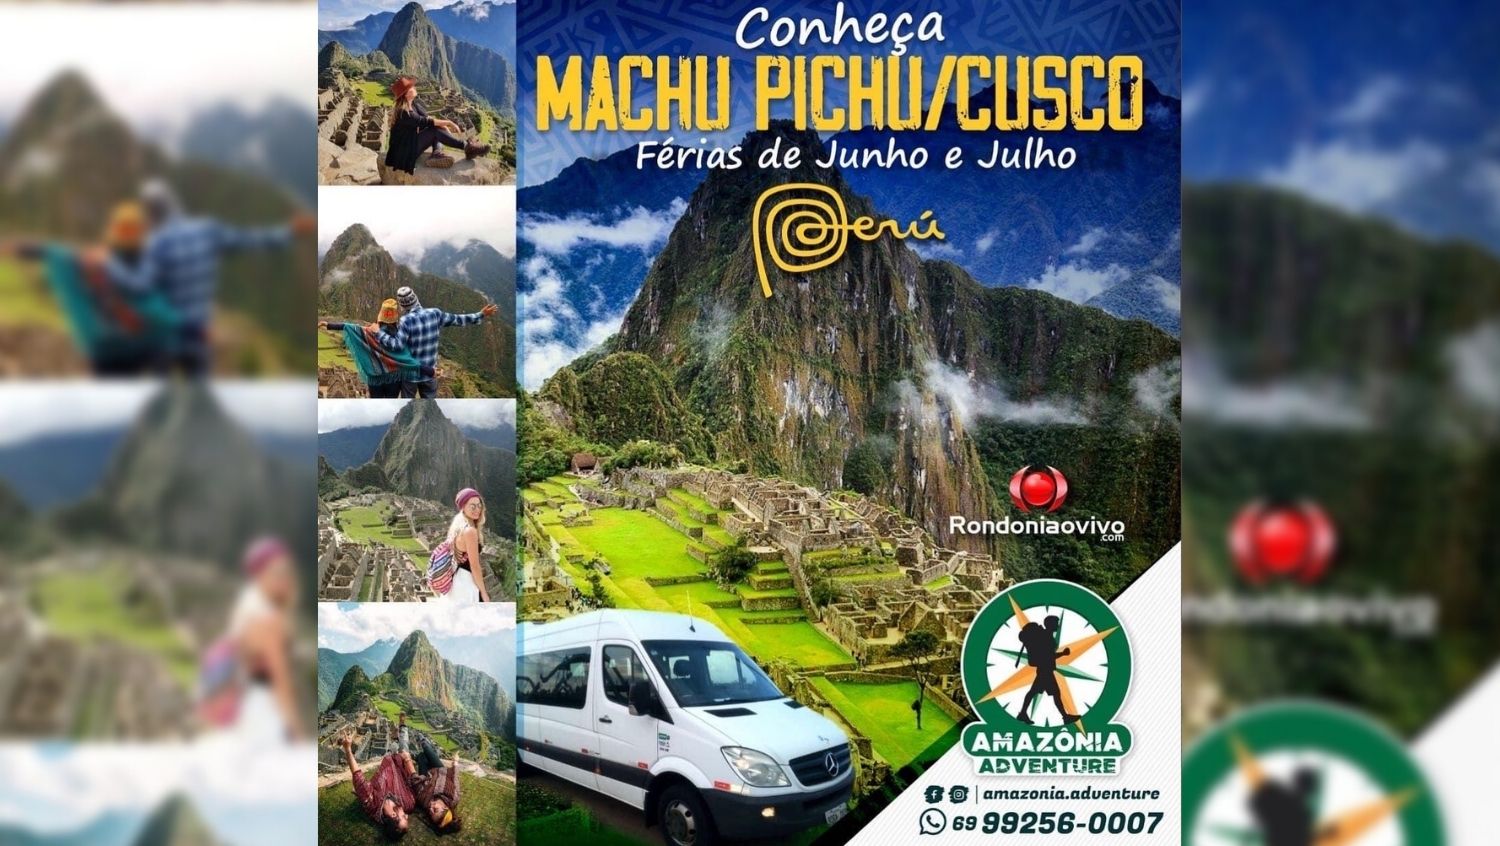 VIAGEM: Amazônia Adventure oferece excursão para Machu Pichu